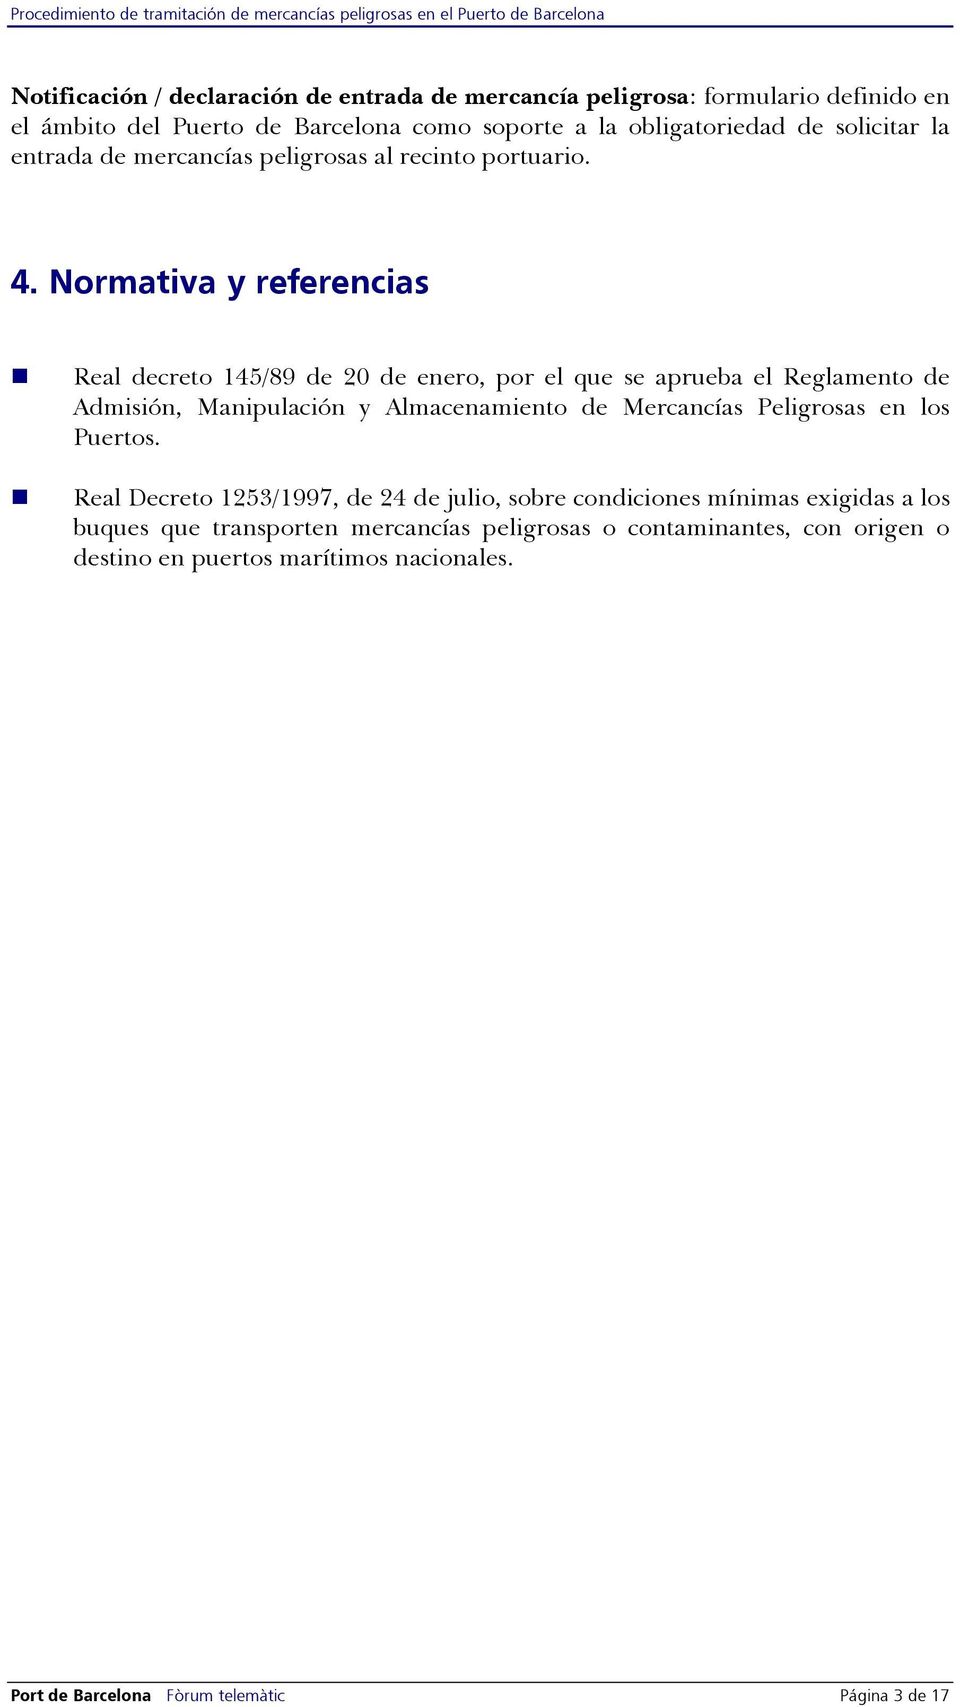 Normativa y referencias Real decreto 145/89 de 20 de enero, por el que se aprueba el Reglamento de Admisión, Manipulación y Almacenamiento de Mercancías